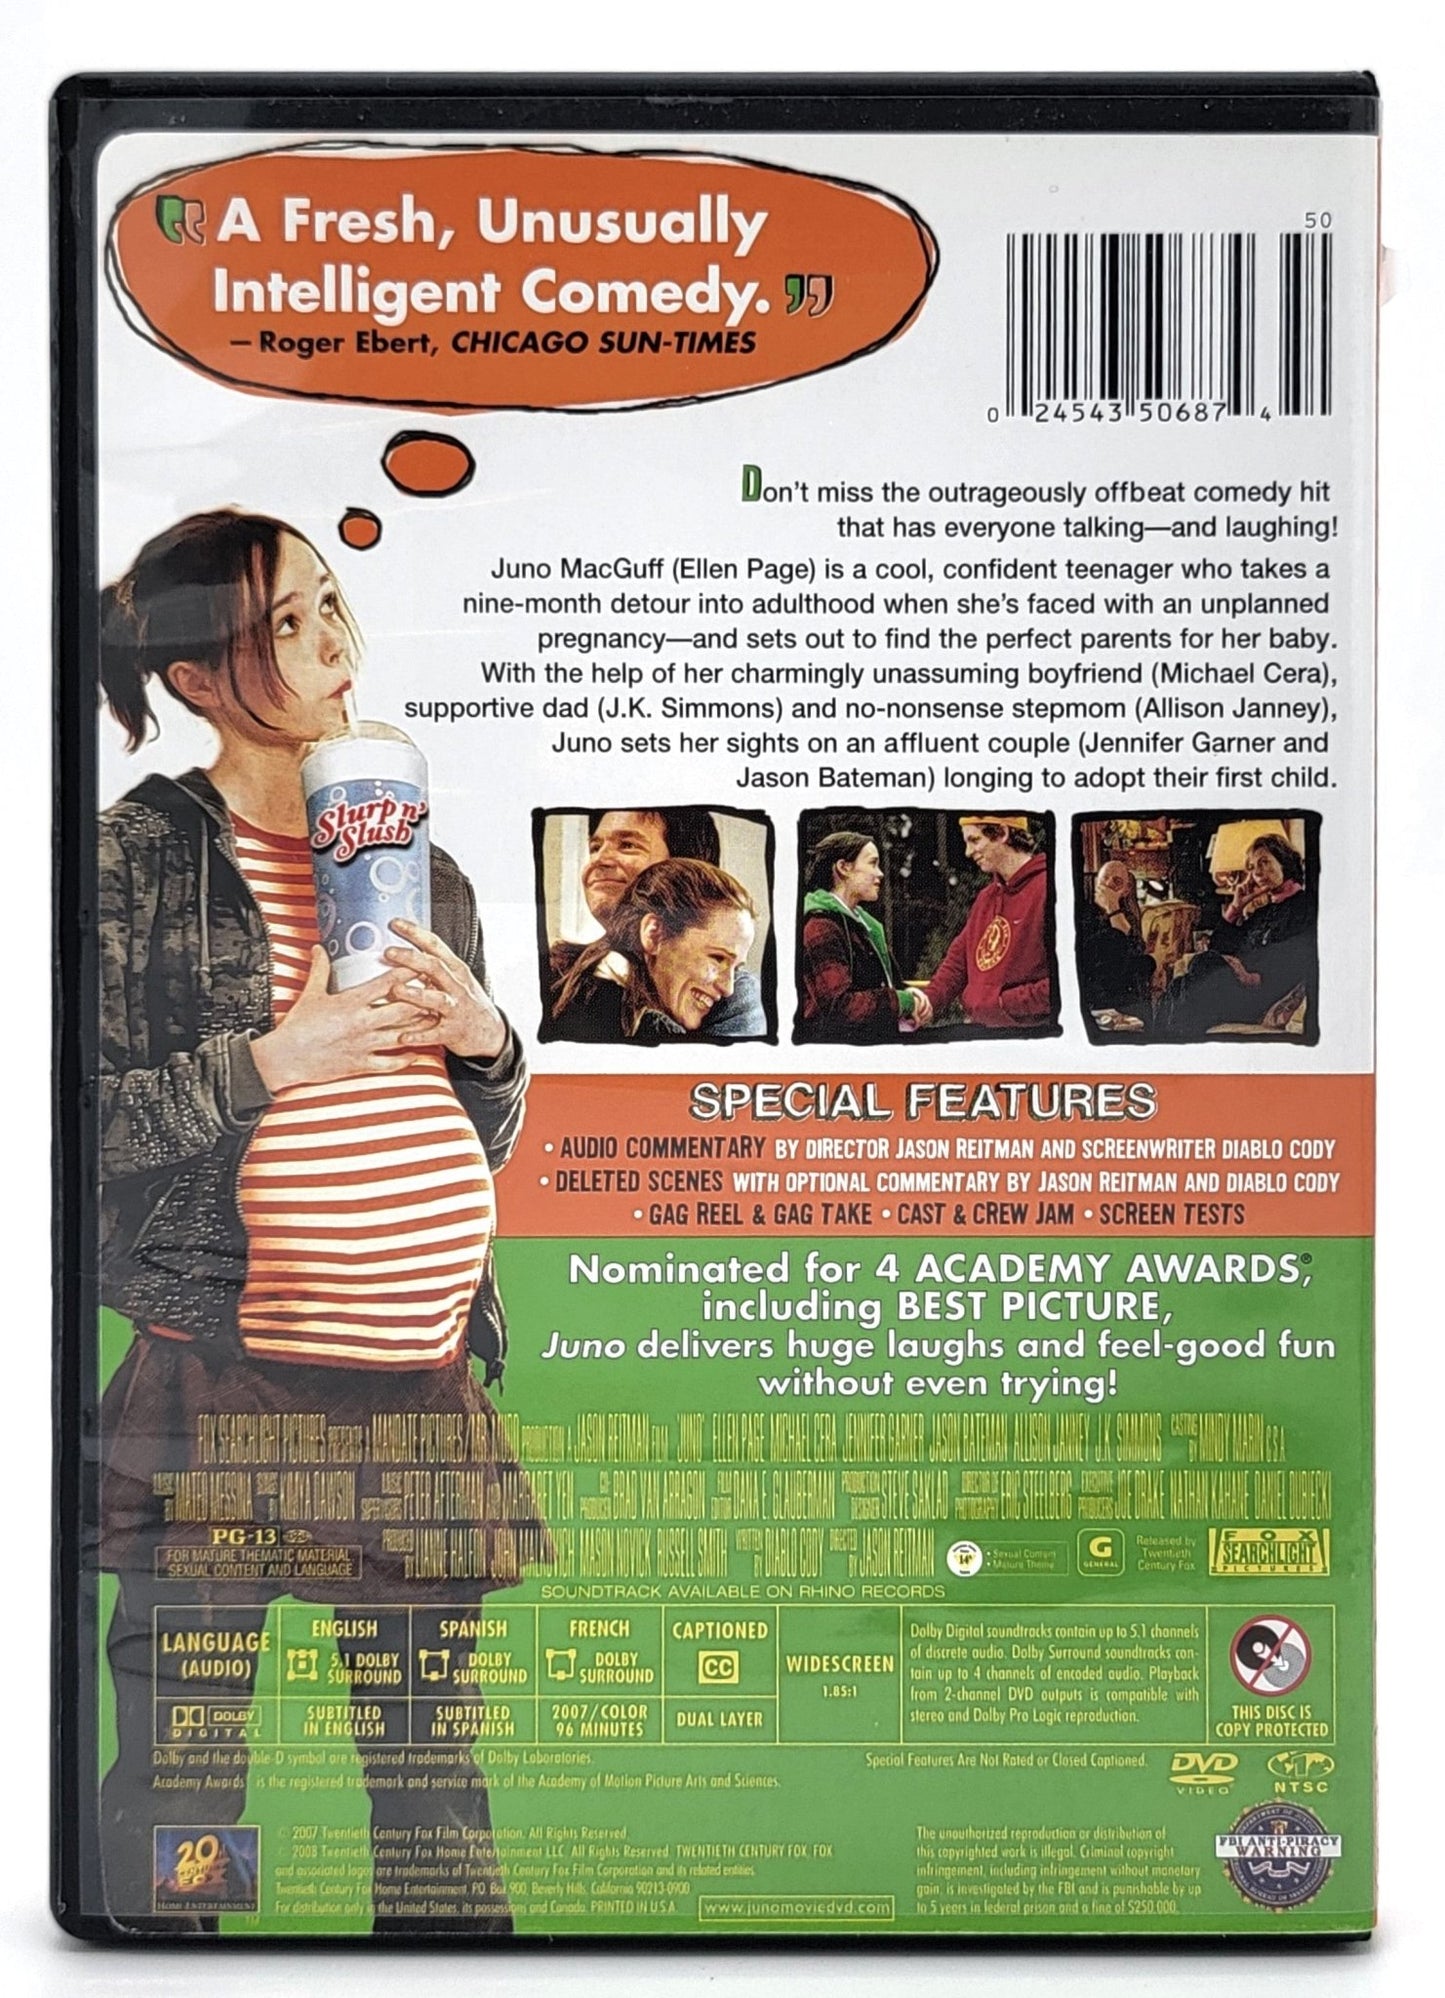 20th Century Fox Home Entertainment - Juno | DVD | Widescreen - DVD - Steady Bunny Shop